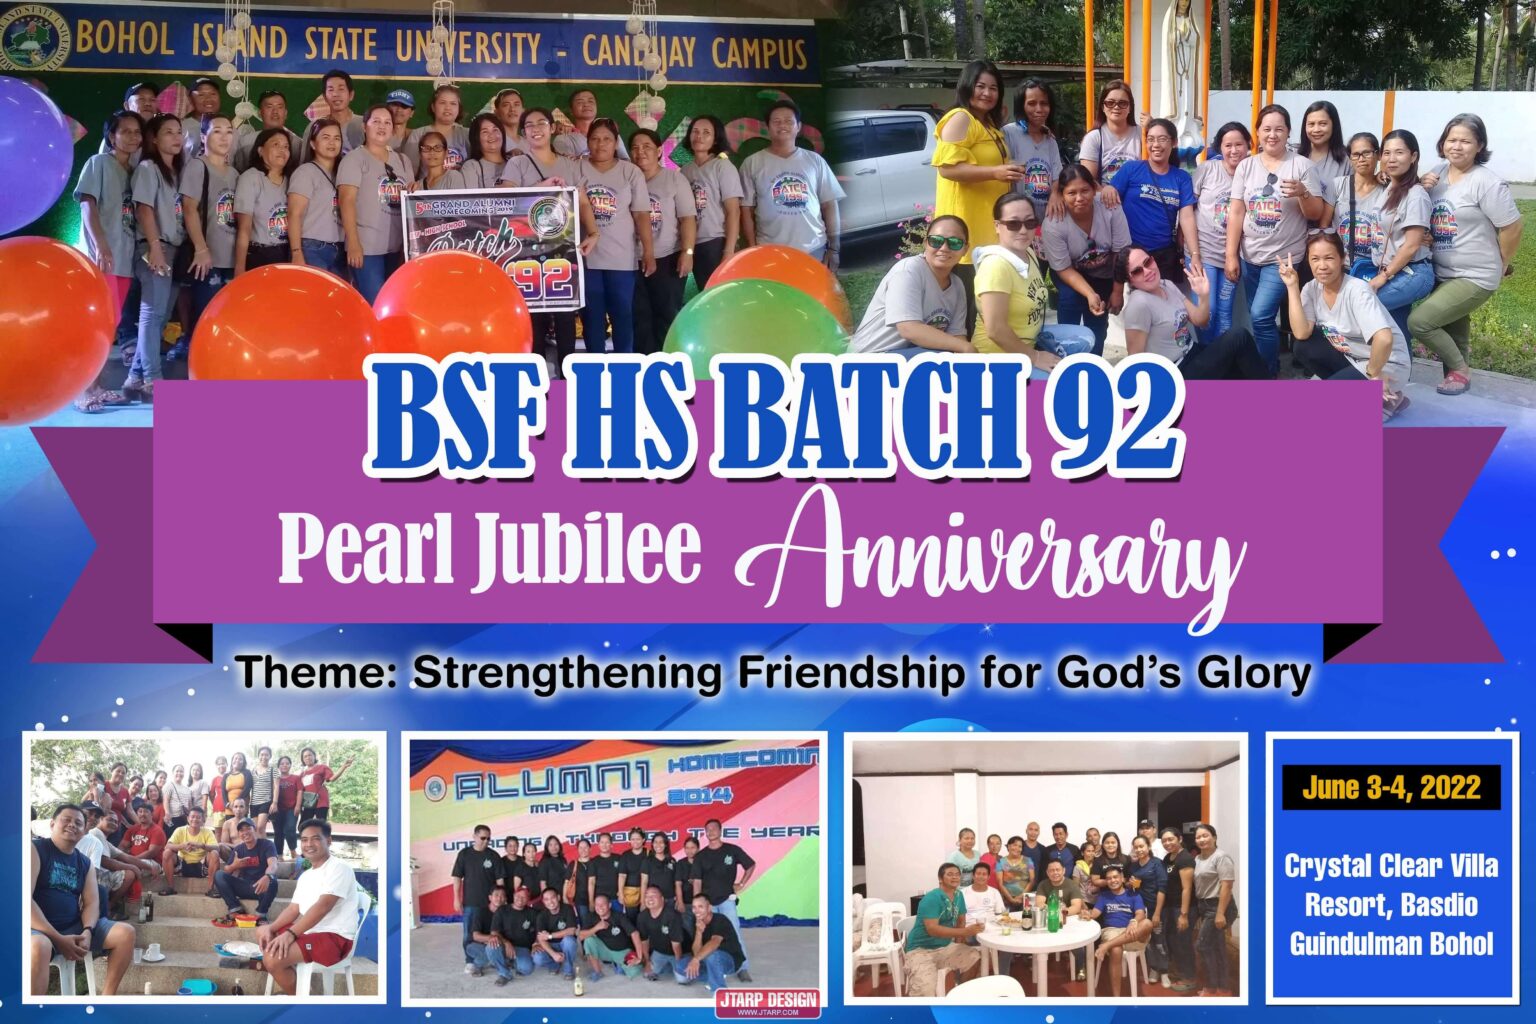 6x4 BSF HS Batch 92 Pearl Jubilee Anniversarry